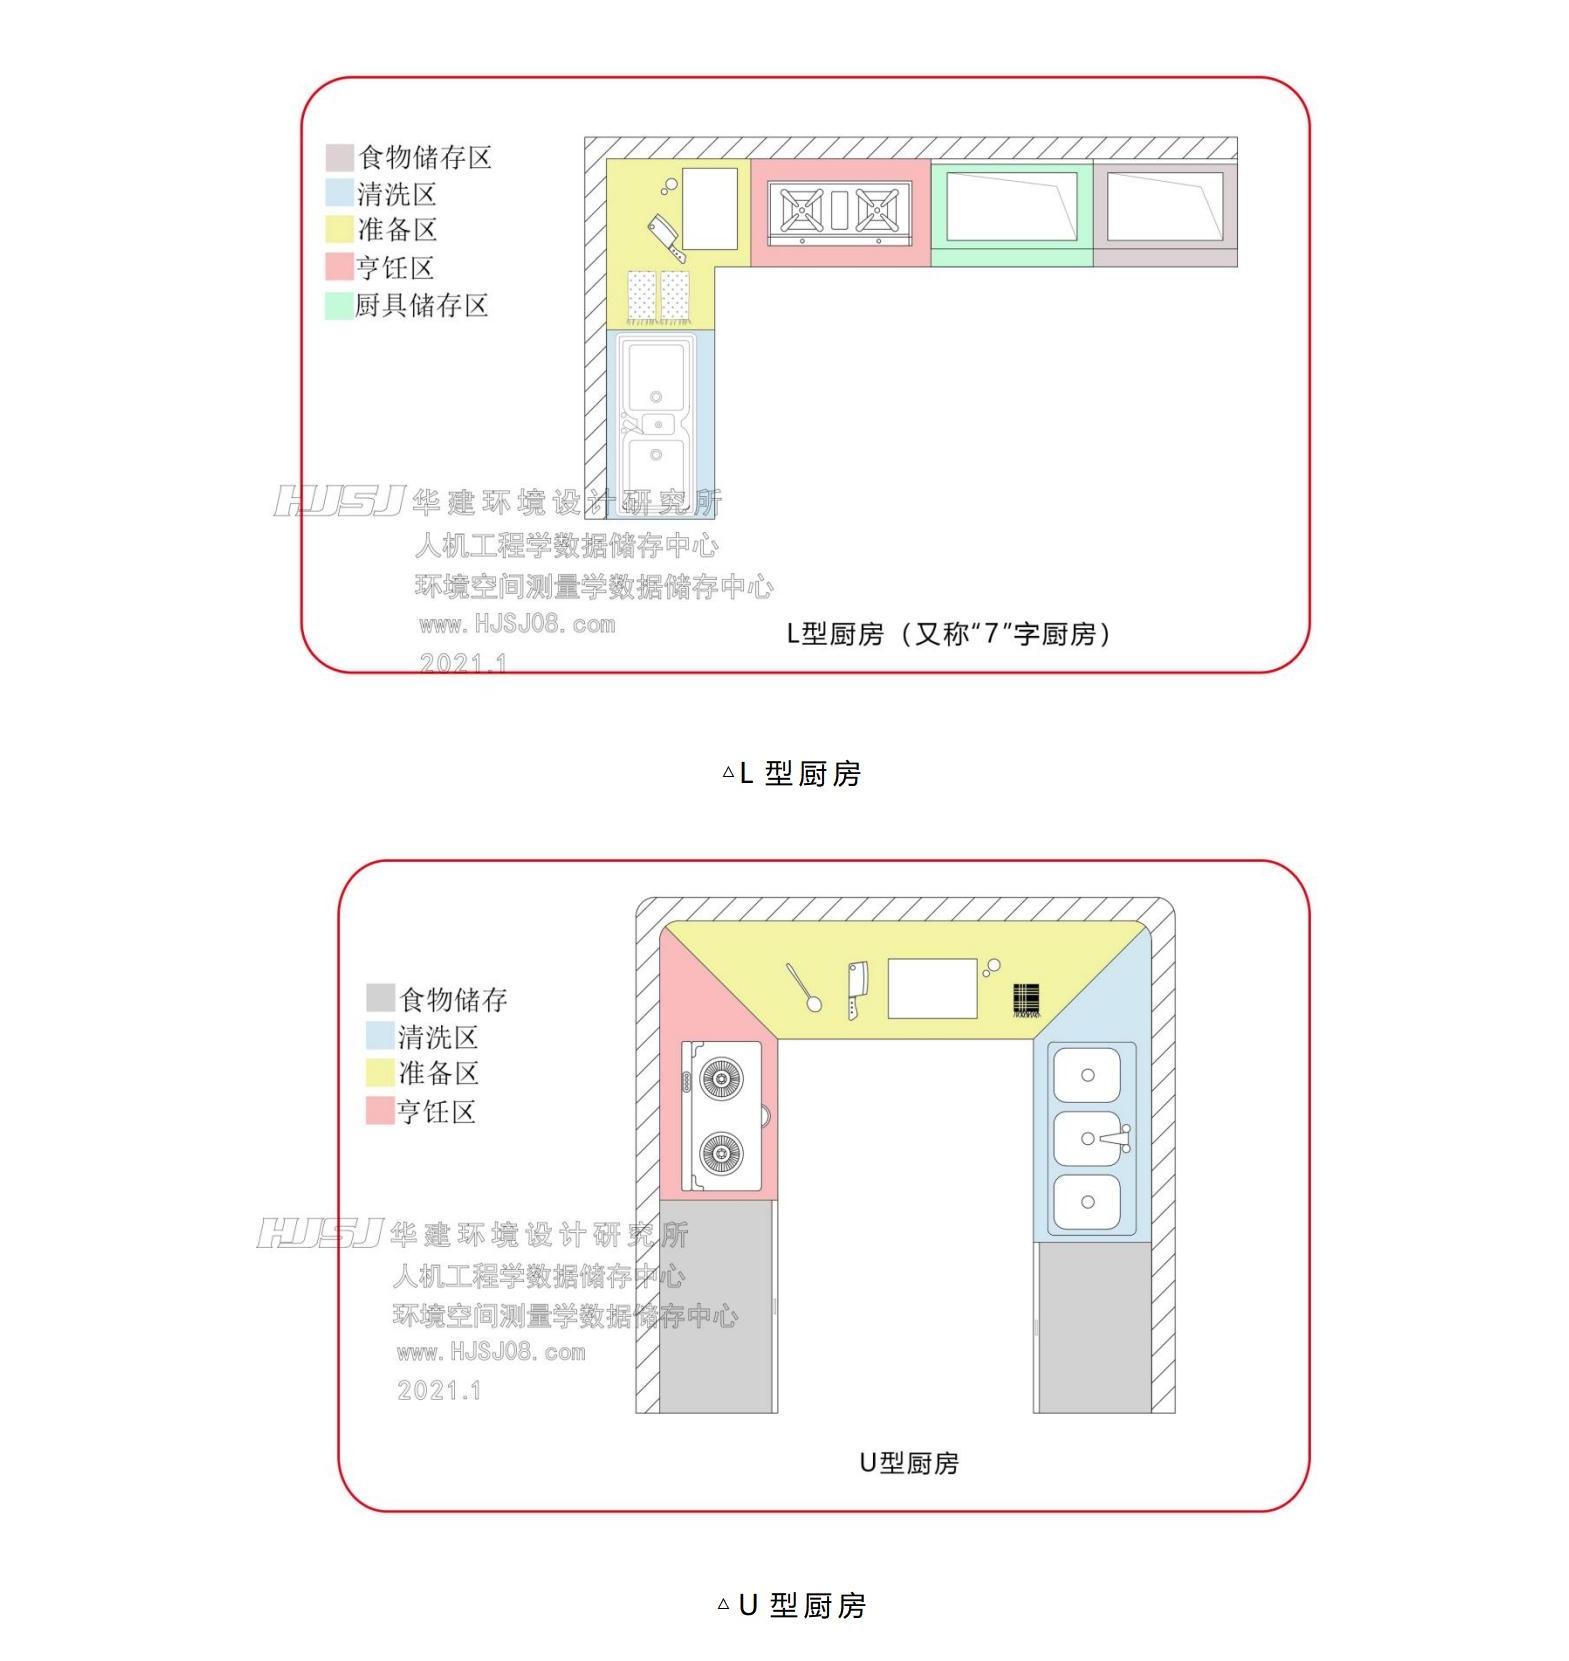 厨房，橱柜厨房用品3d模型下载-【集简空间】「每日更新」